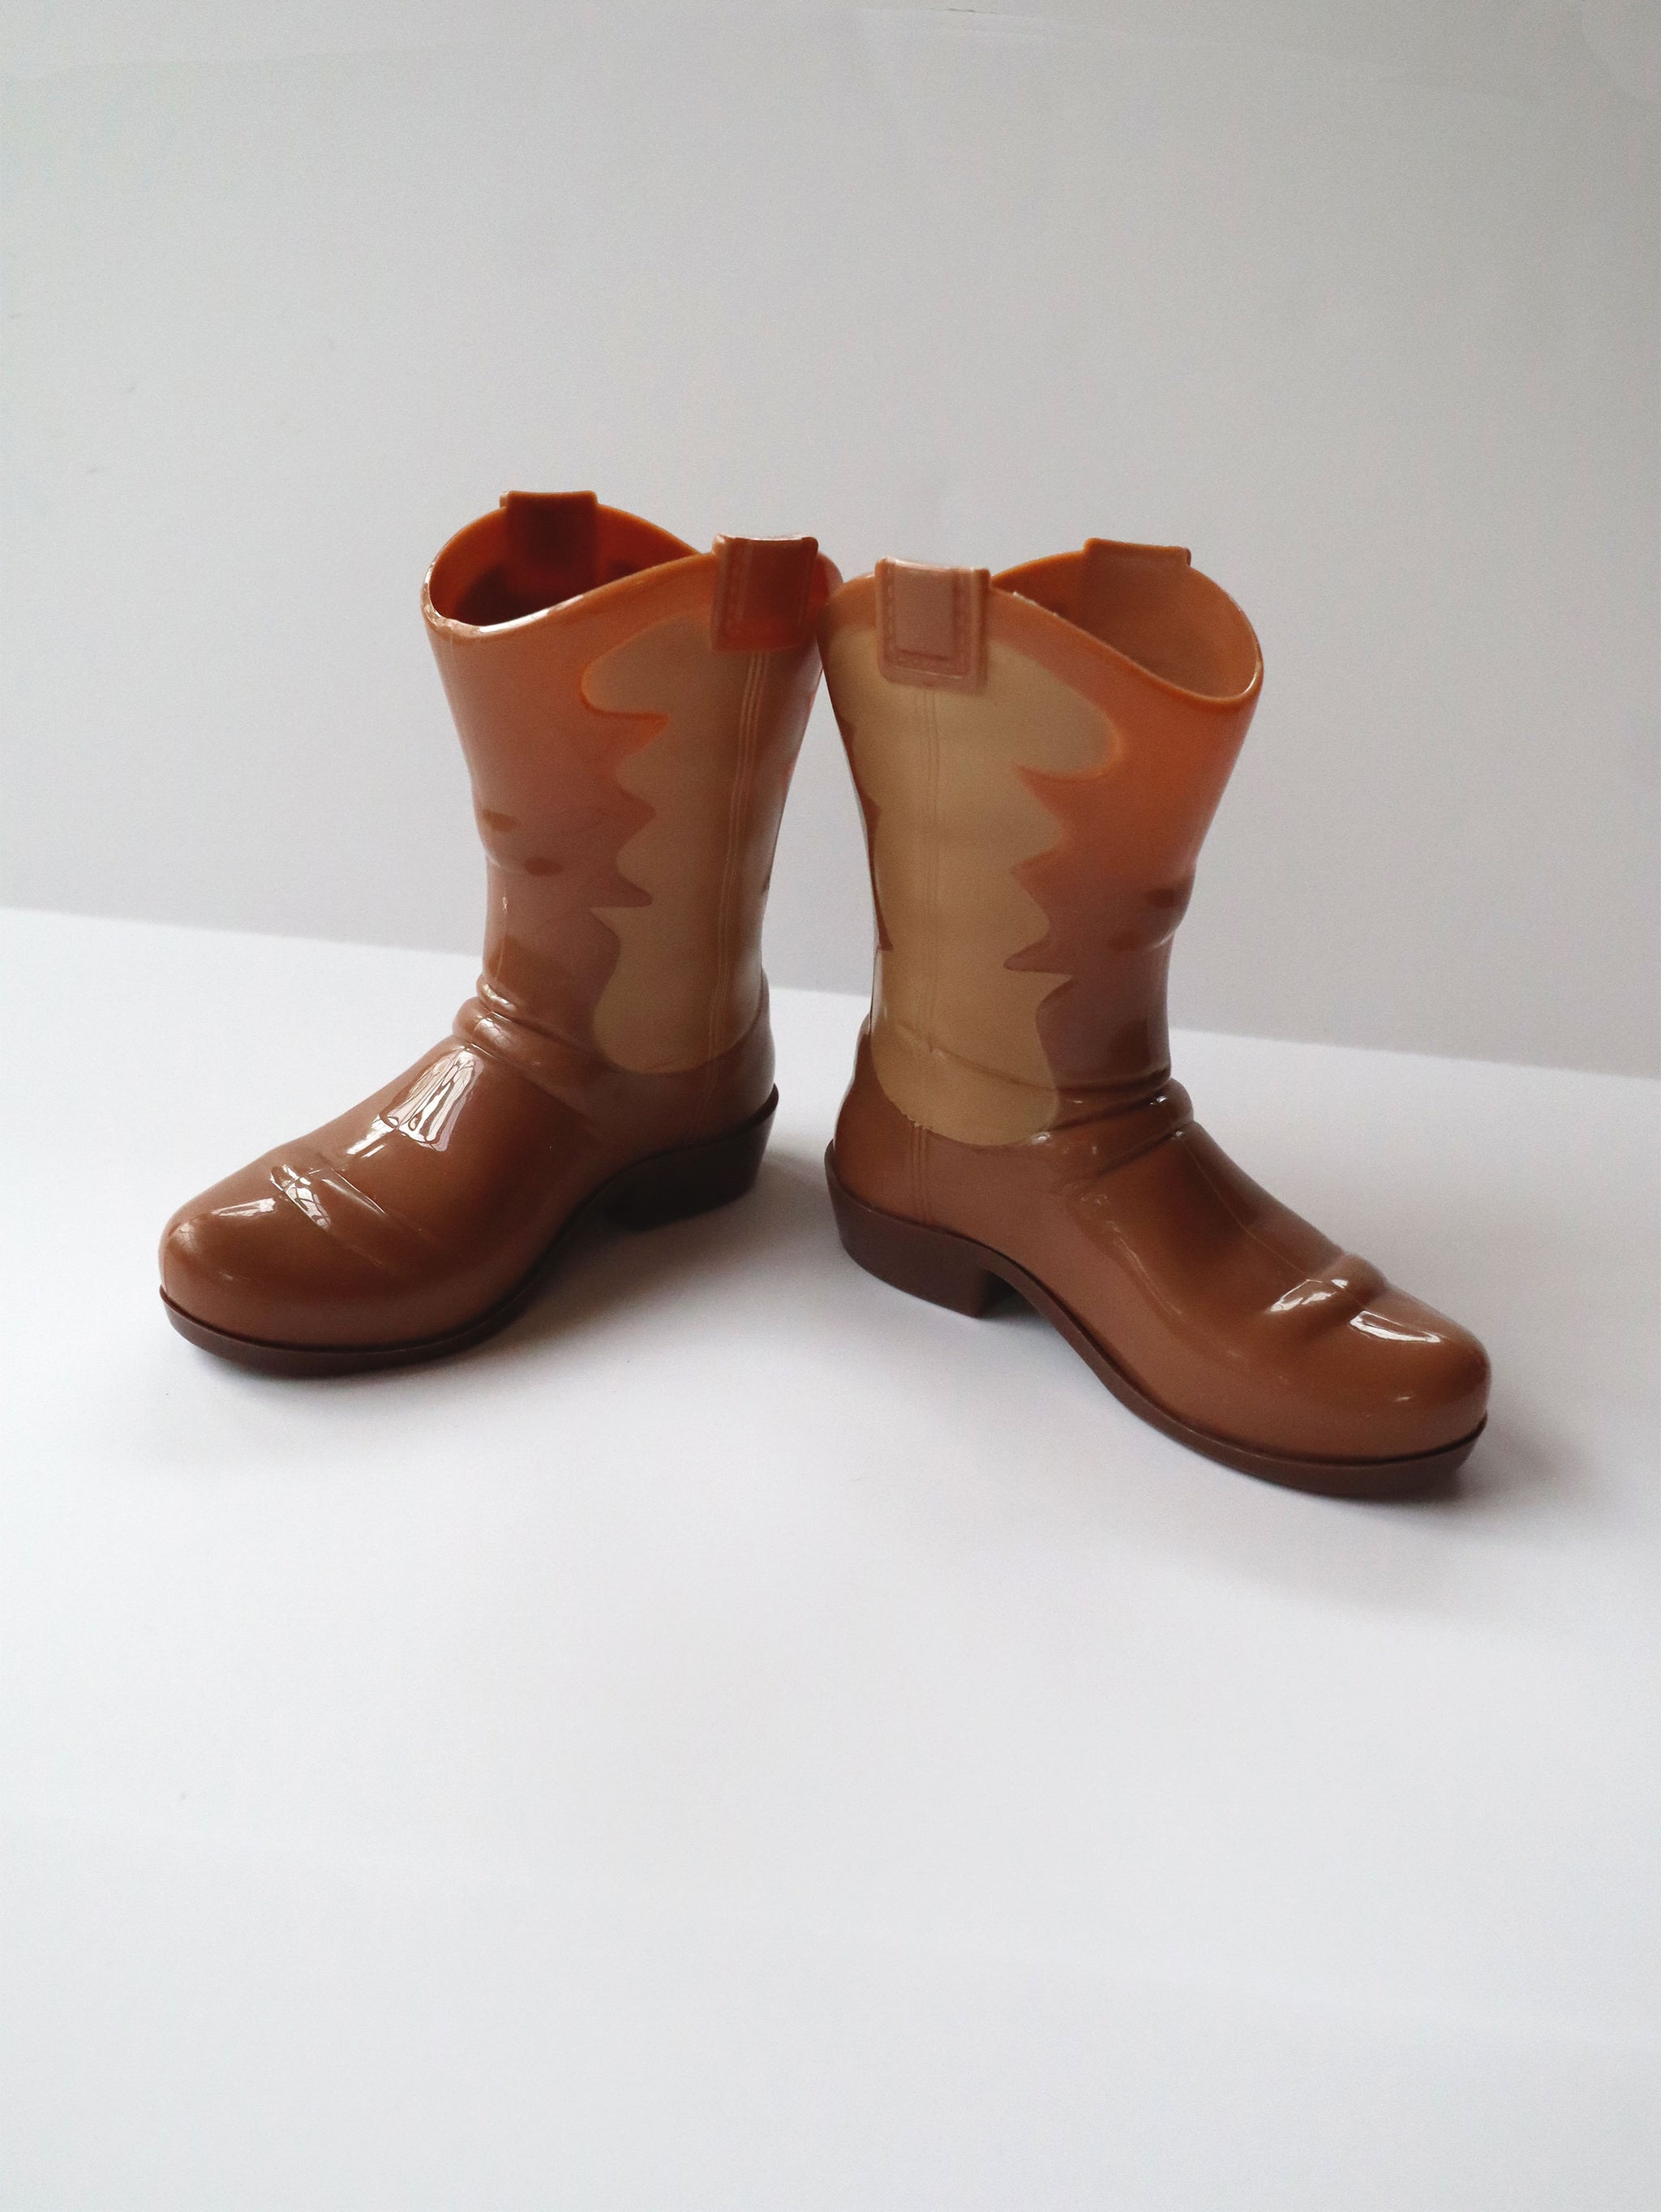 Vintage Plastic Decorative Cowboy Boots Set